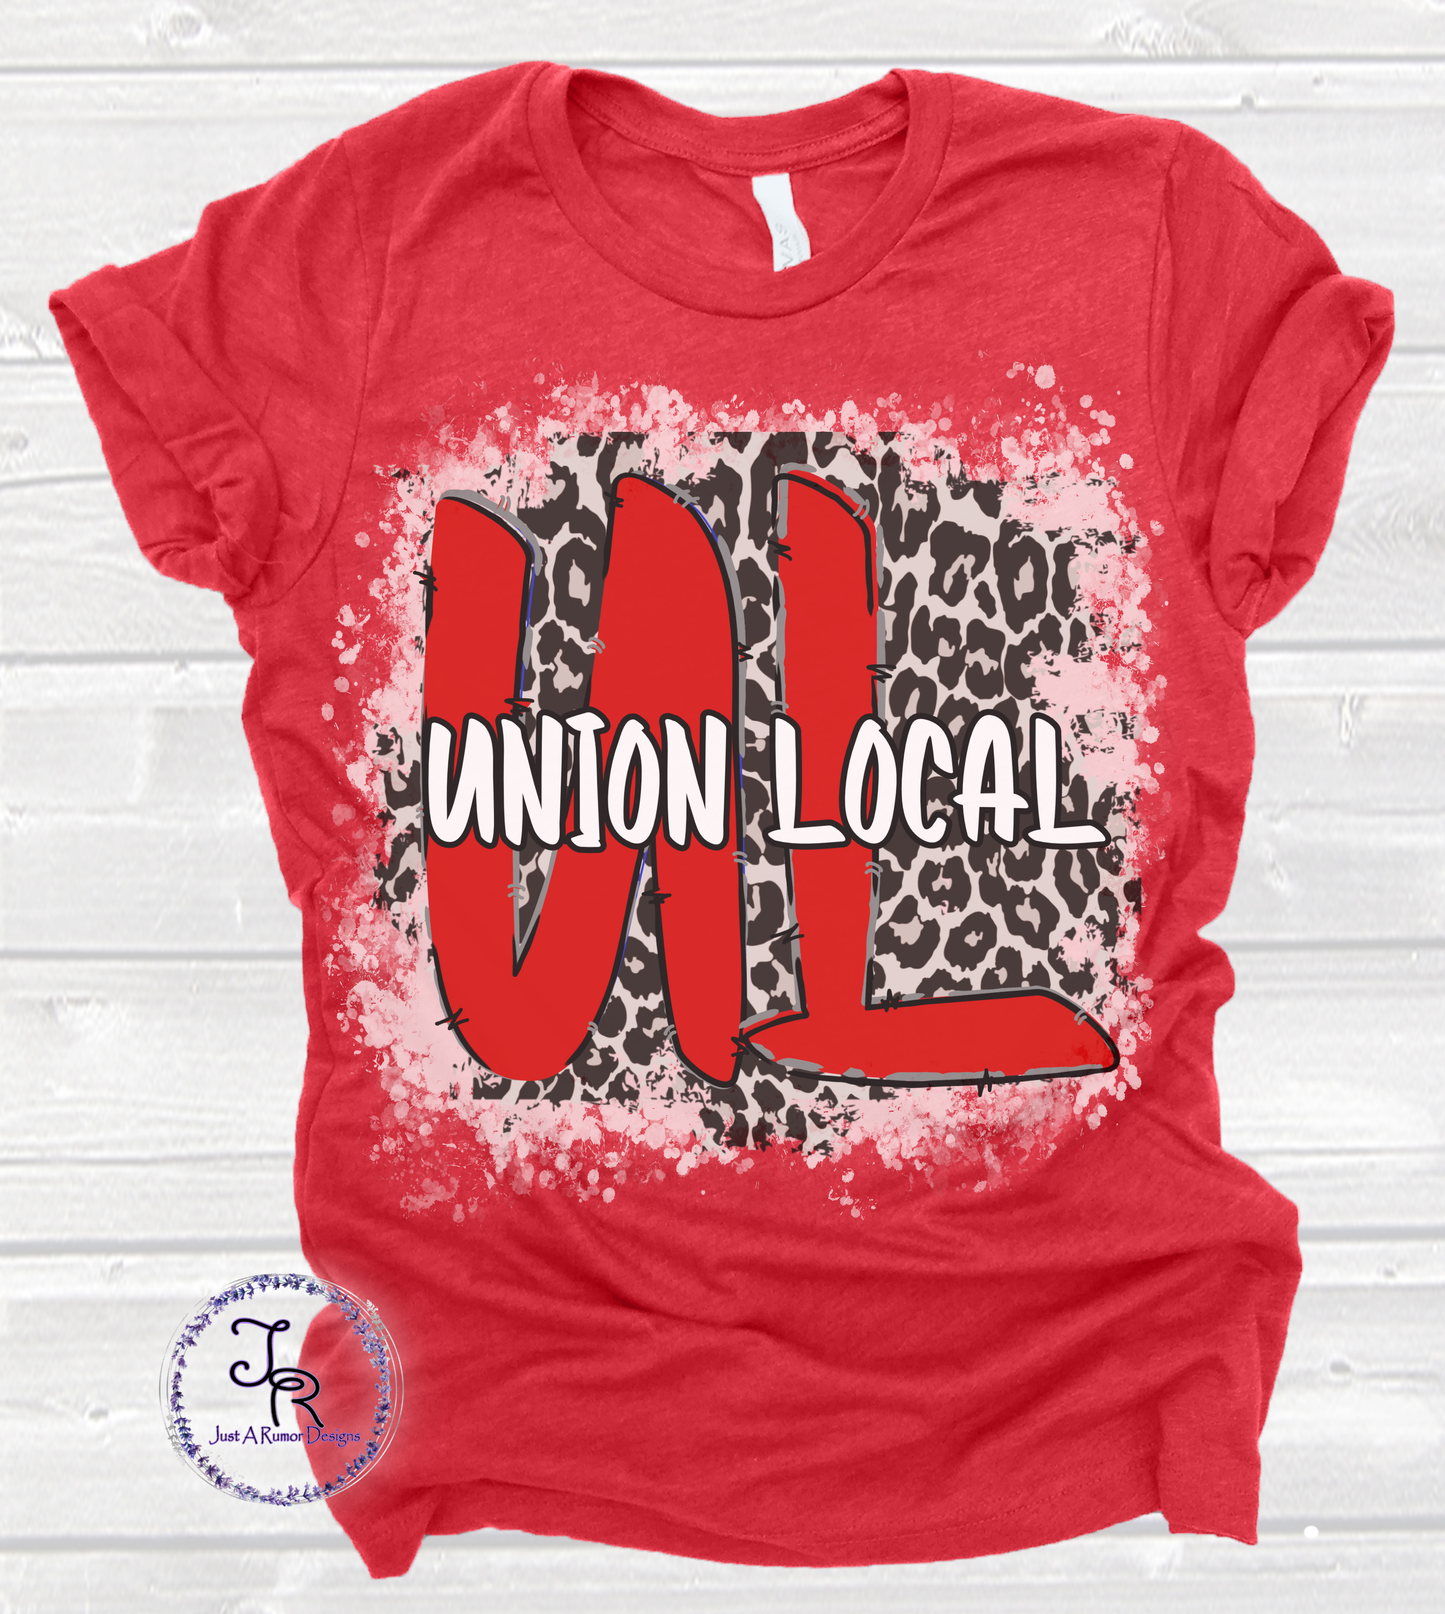 Union Local Cheetah Print Shirt